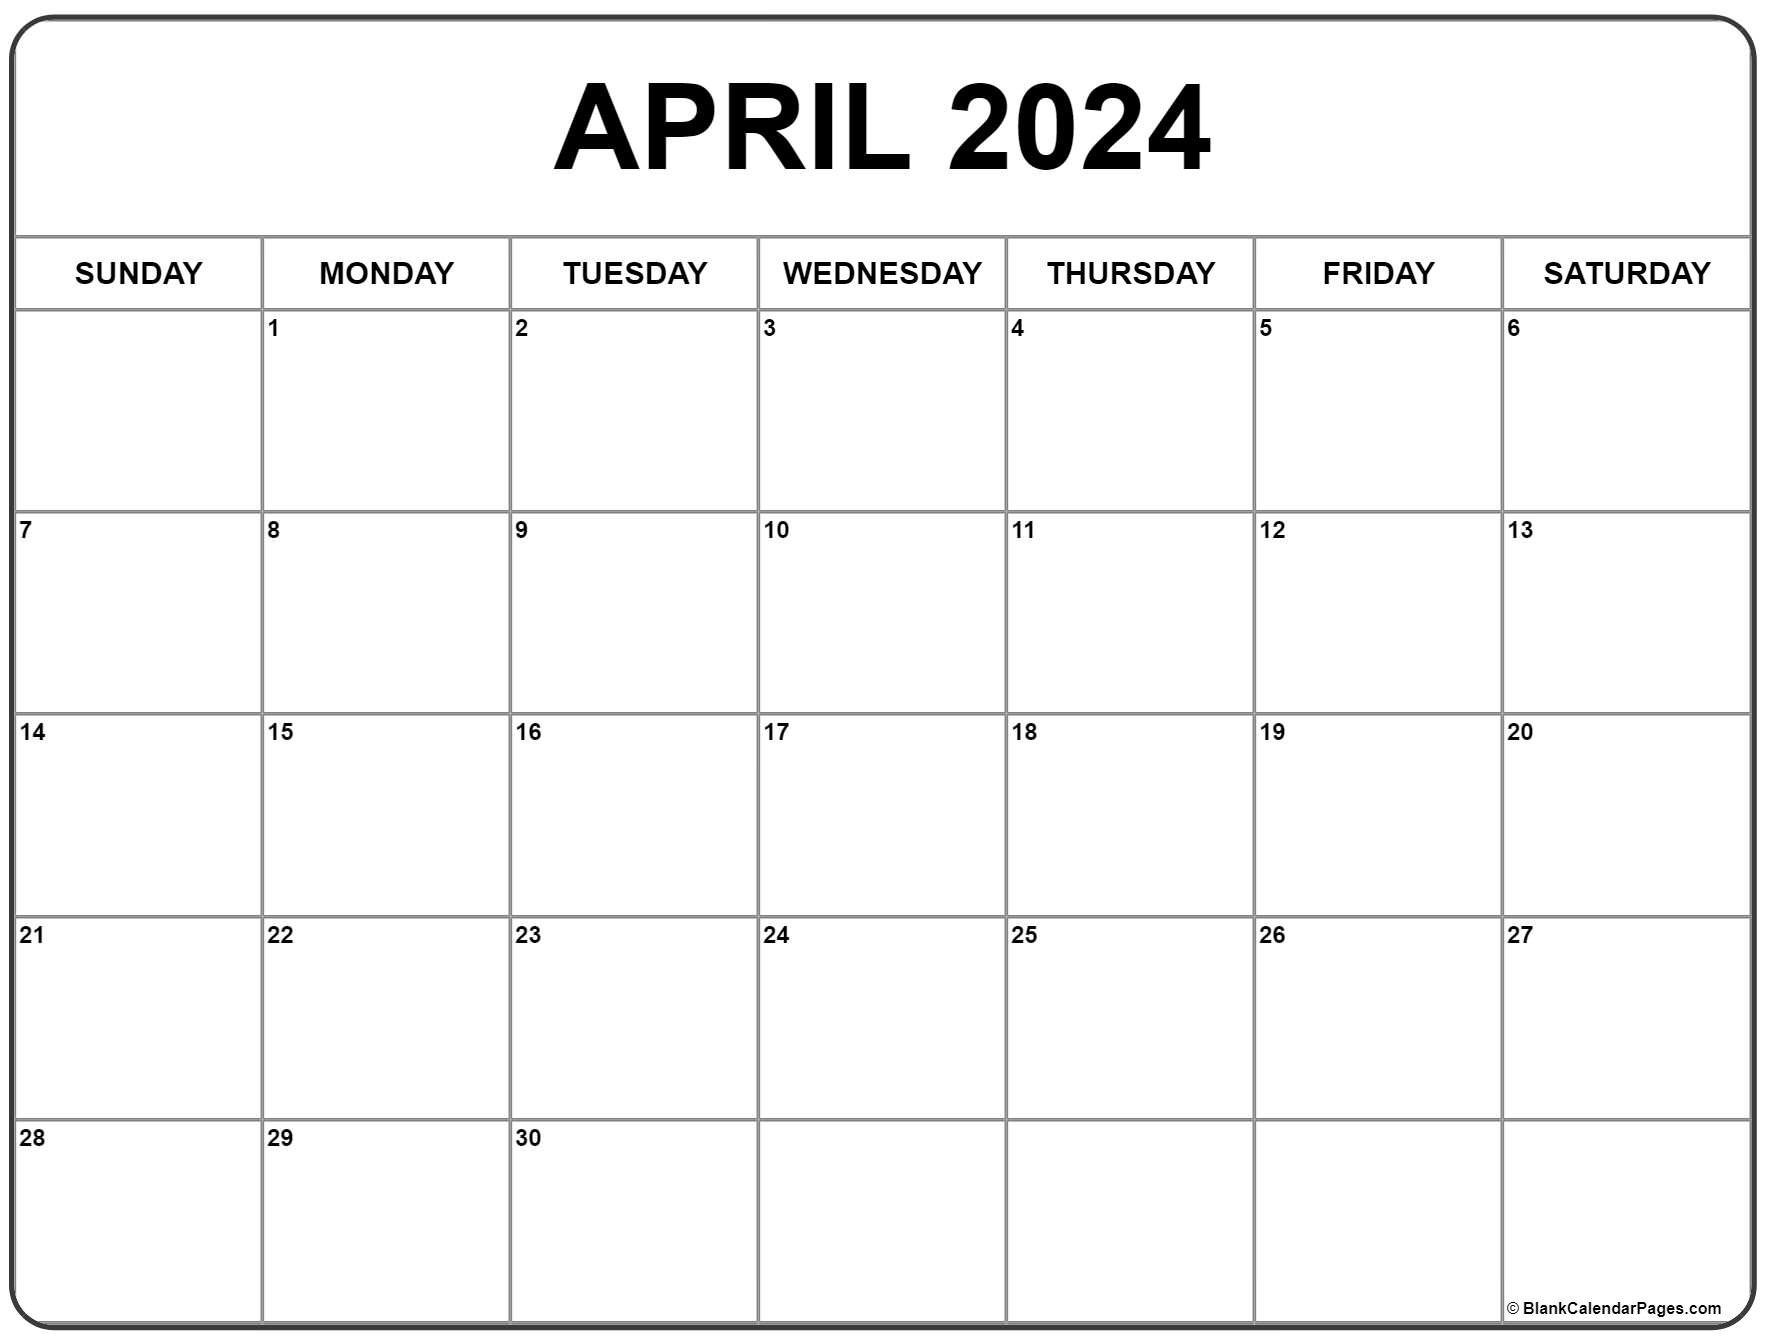 April 2024 Calendar | Free Printable Calendar for Free Printable 2024 Calendar April